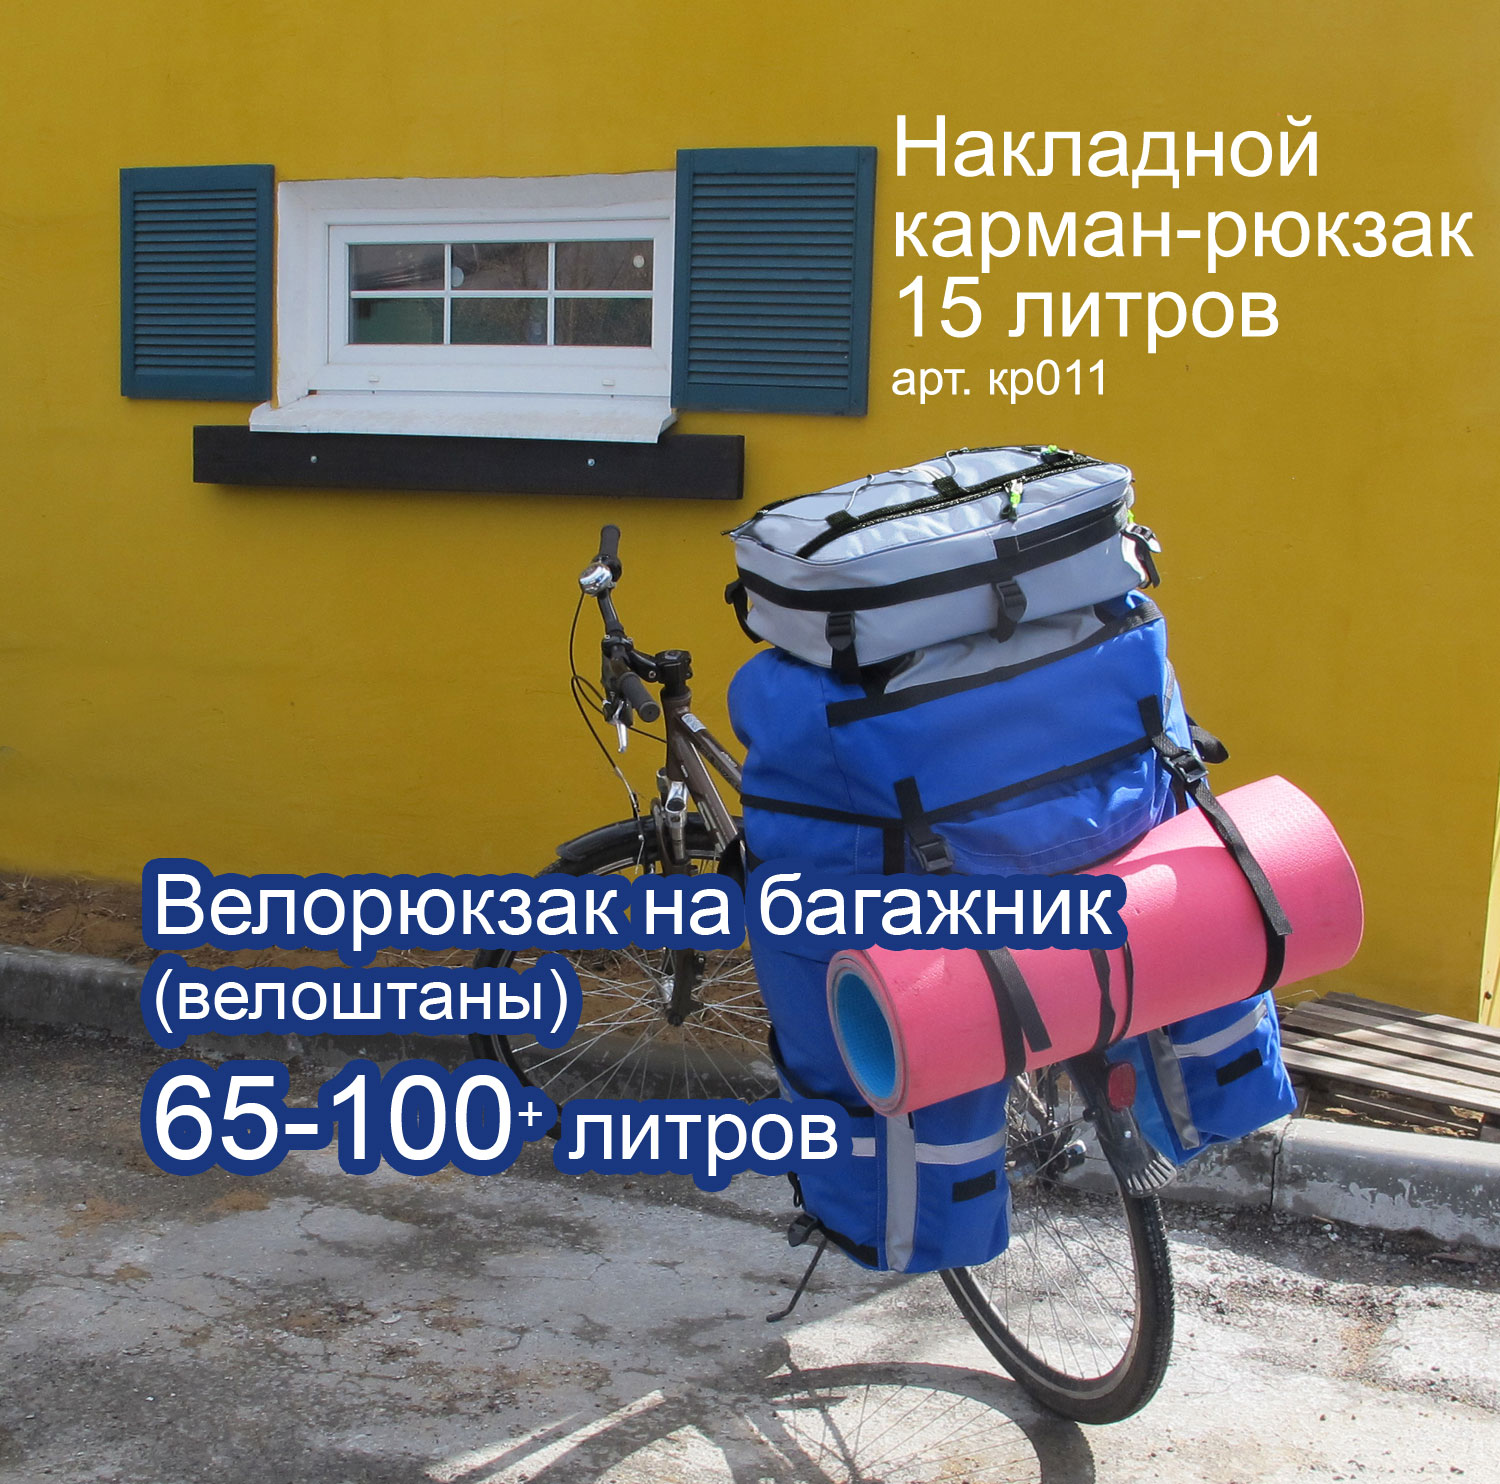 Велорюкзак на багажник (велоштаны) 80-100+ литров «Мастер»